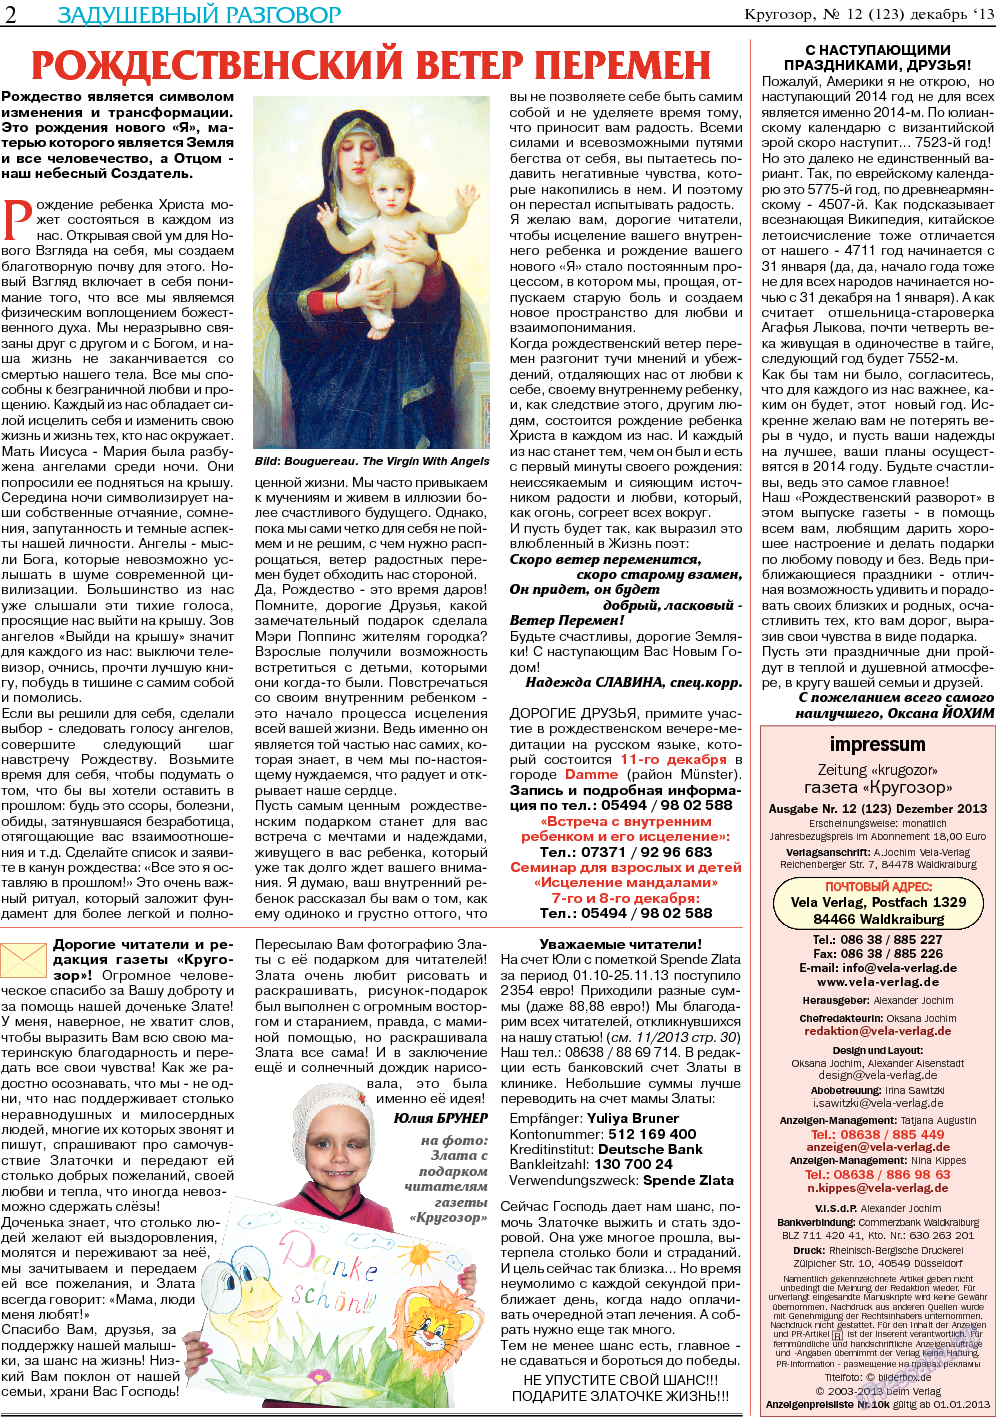 Кругозор, газета. 2013 №12 стр.2